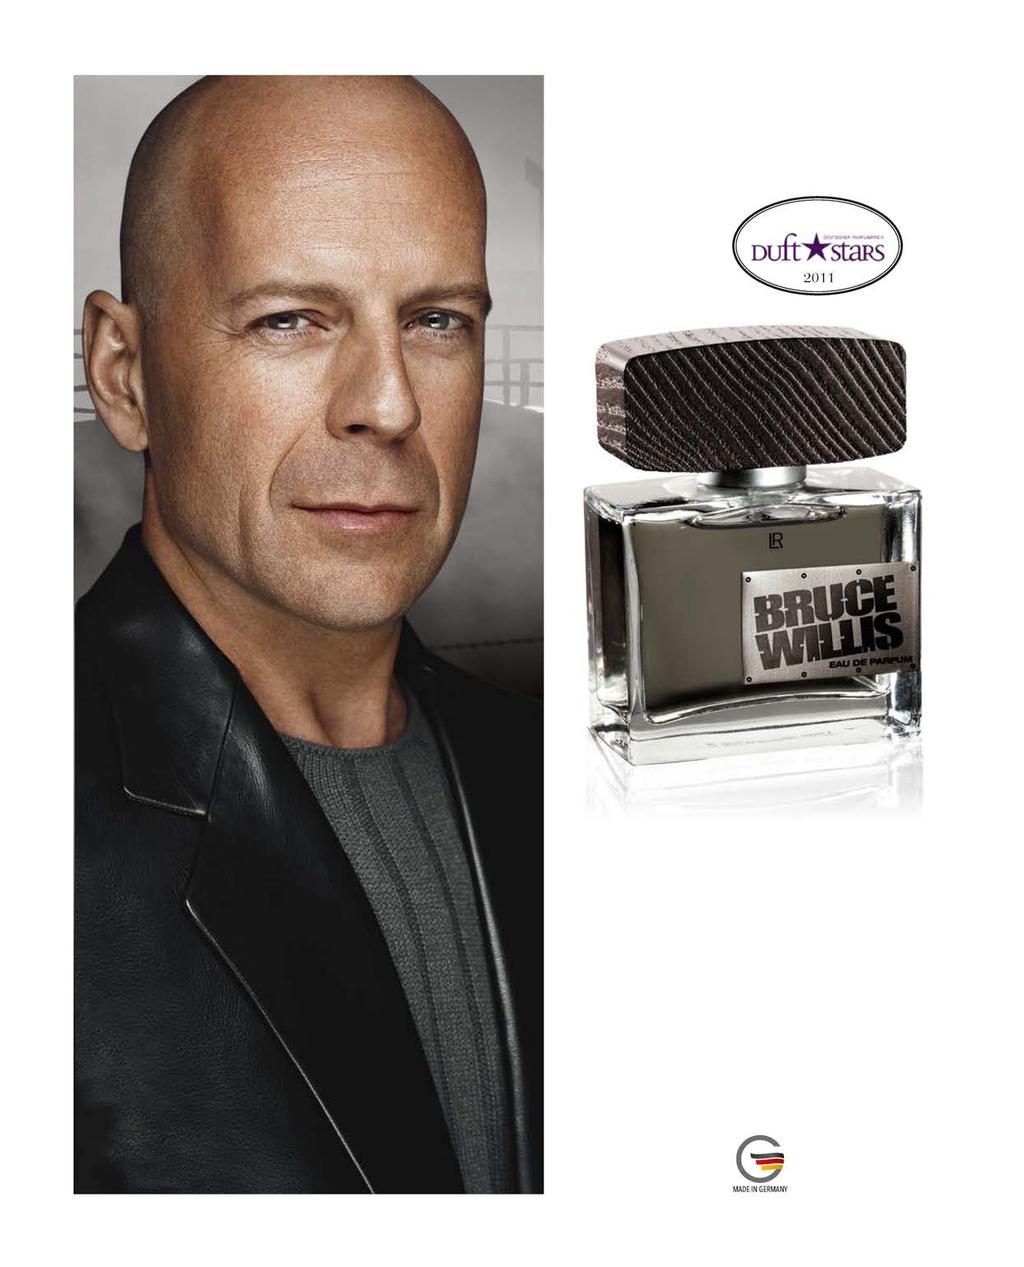 genomineerd voor: Een vleugje onsterfelijkheid Smart guys live forever - net als Bruce Willis. Eenvoudig, mannelijk en onconventioneel.